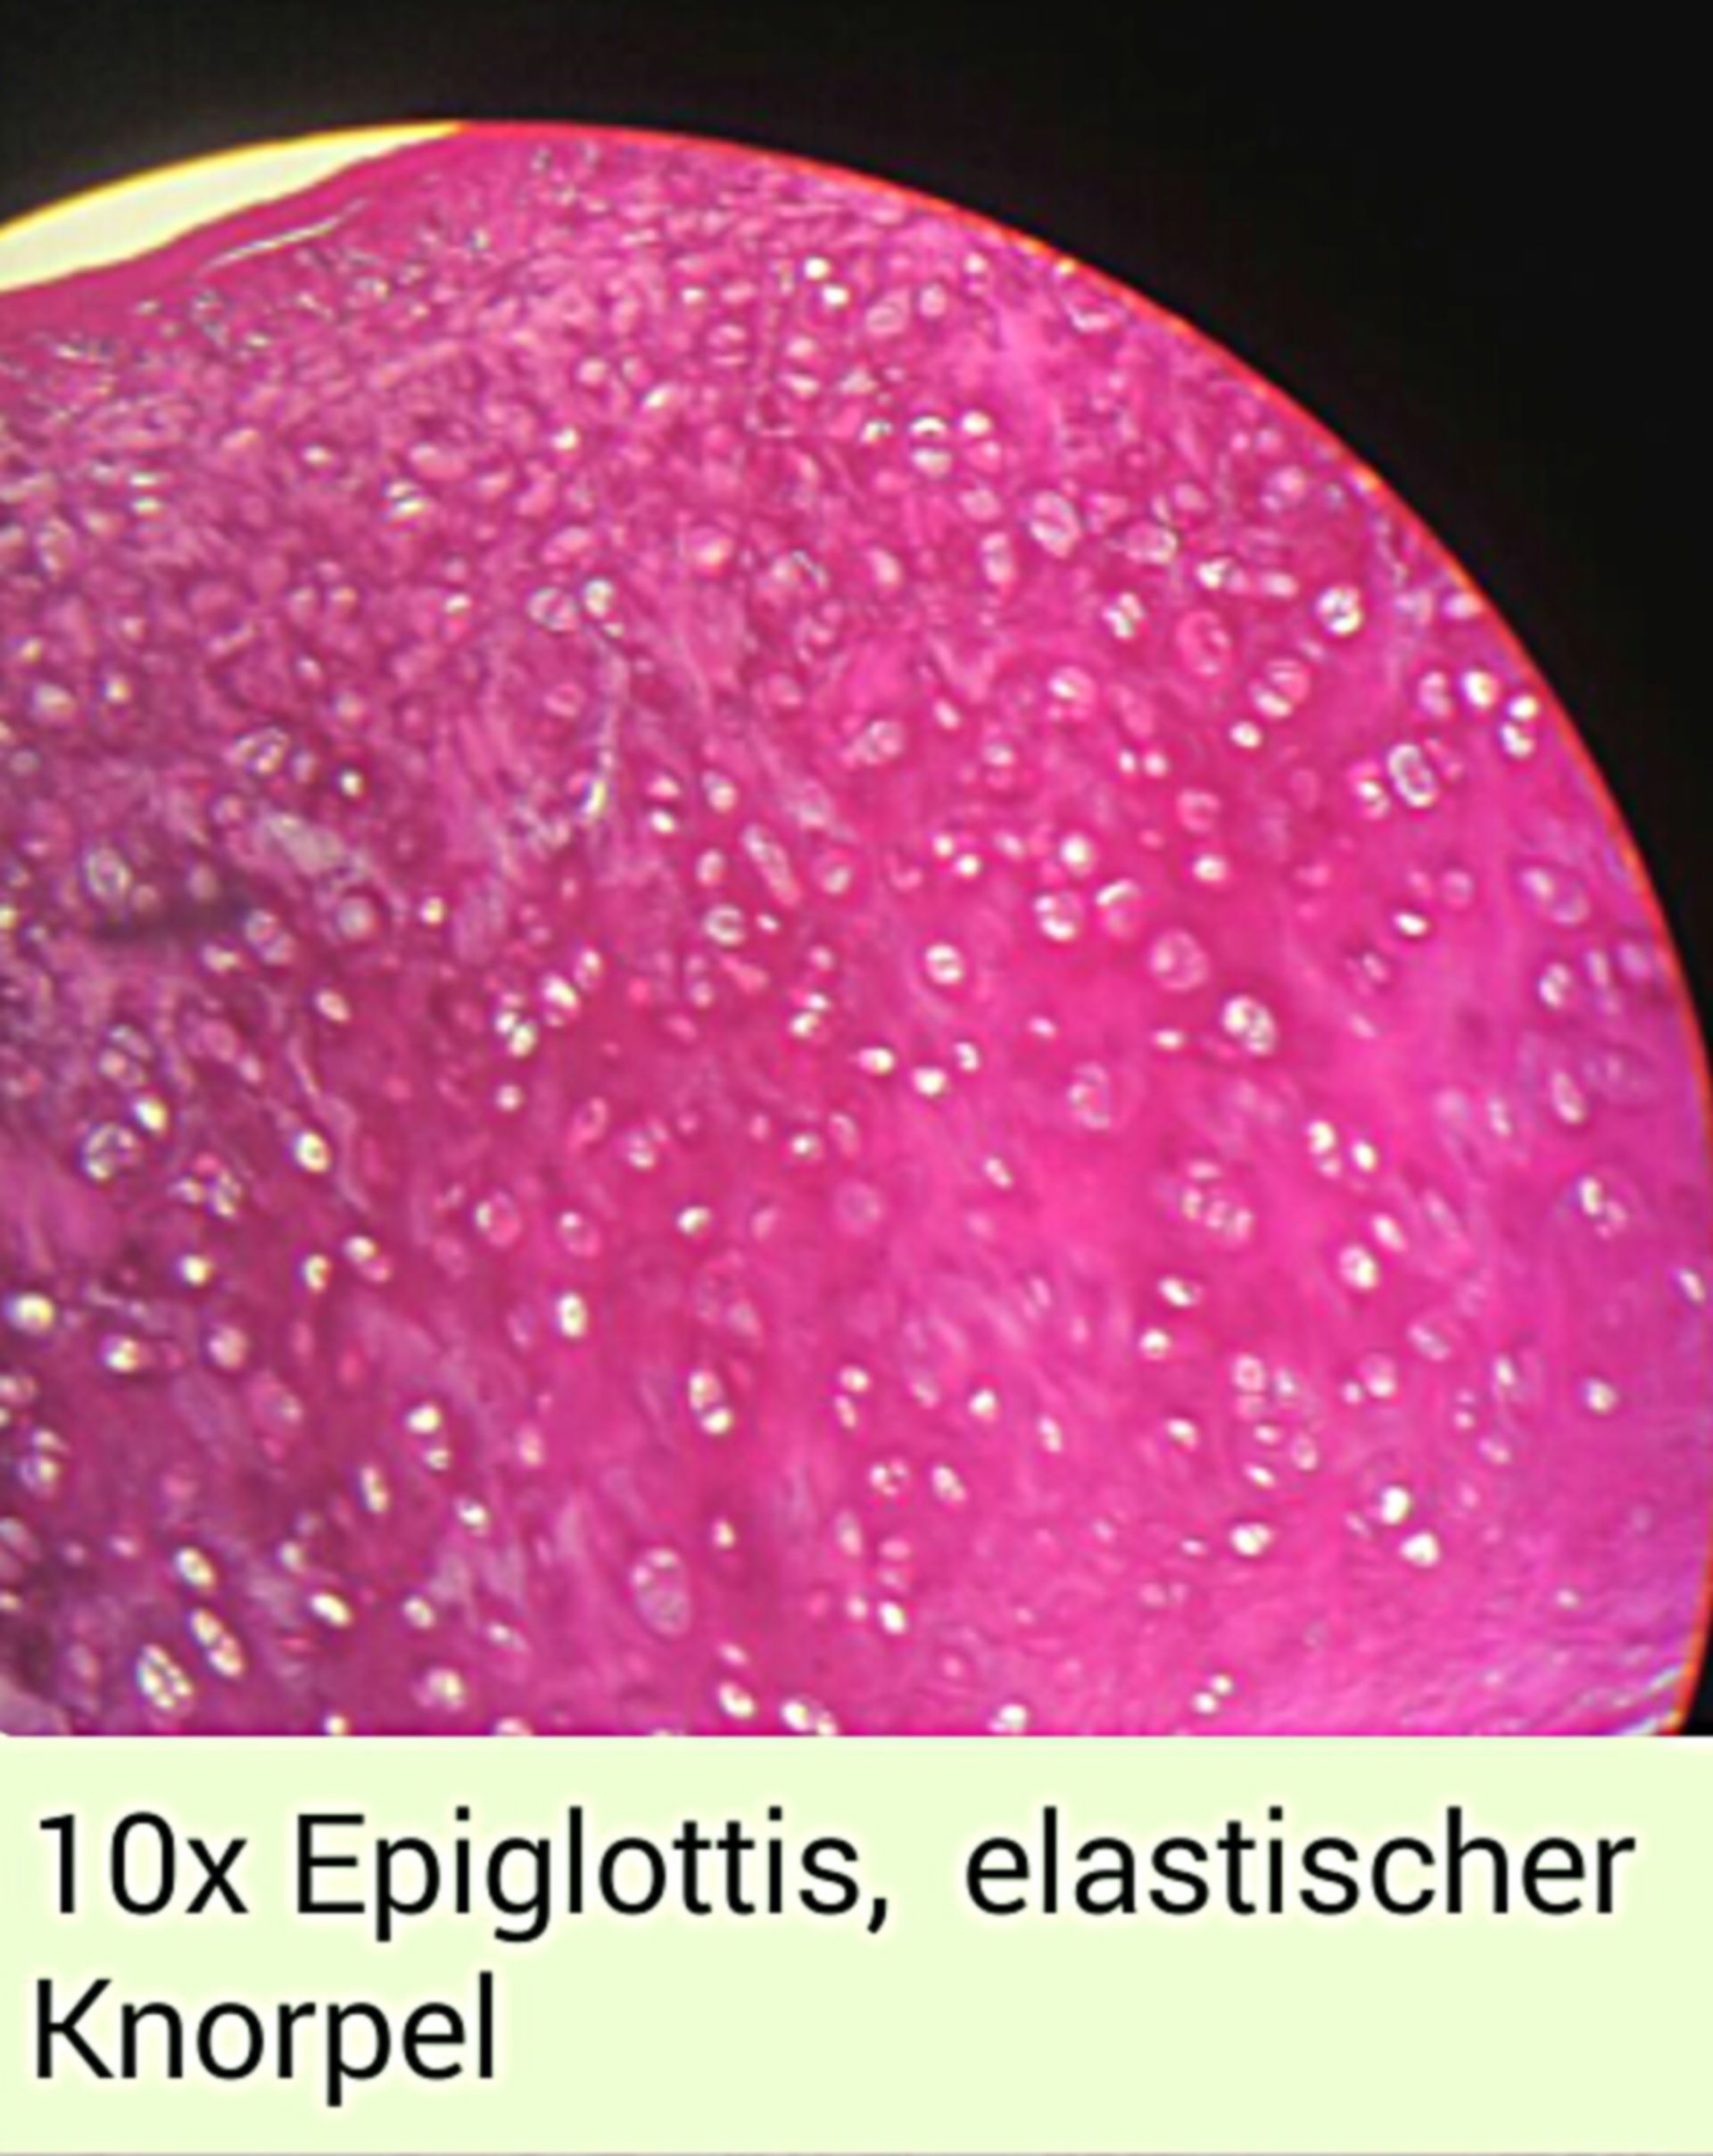 Epiglottis2